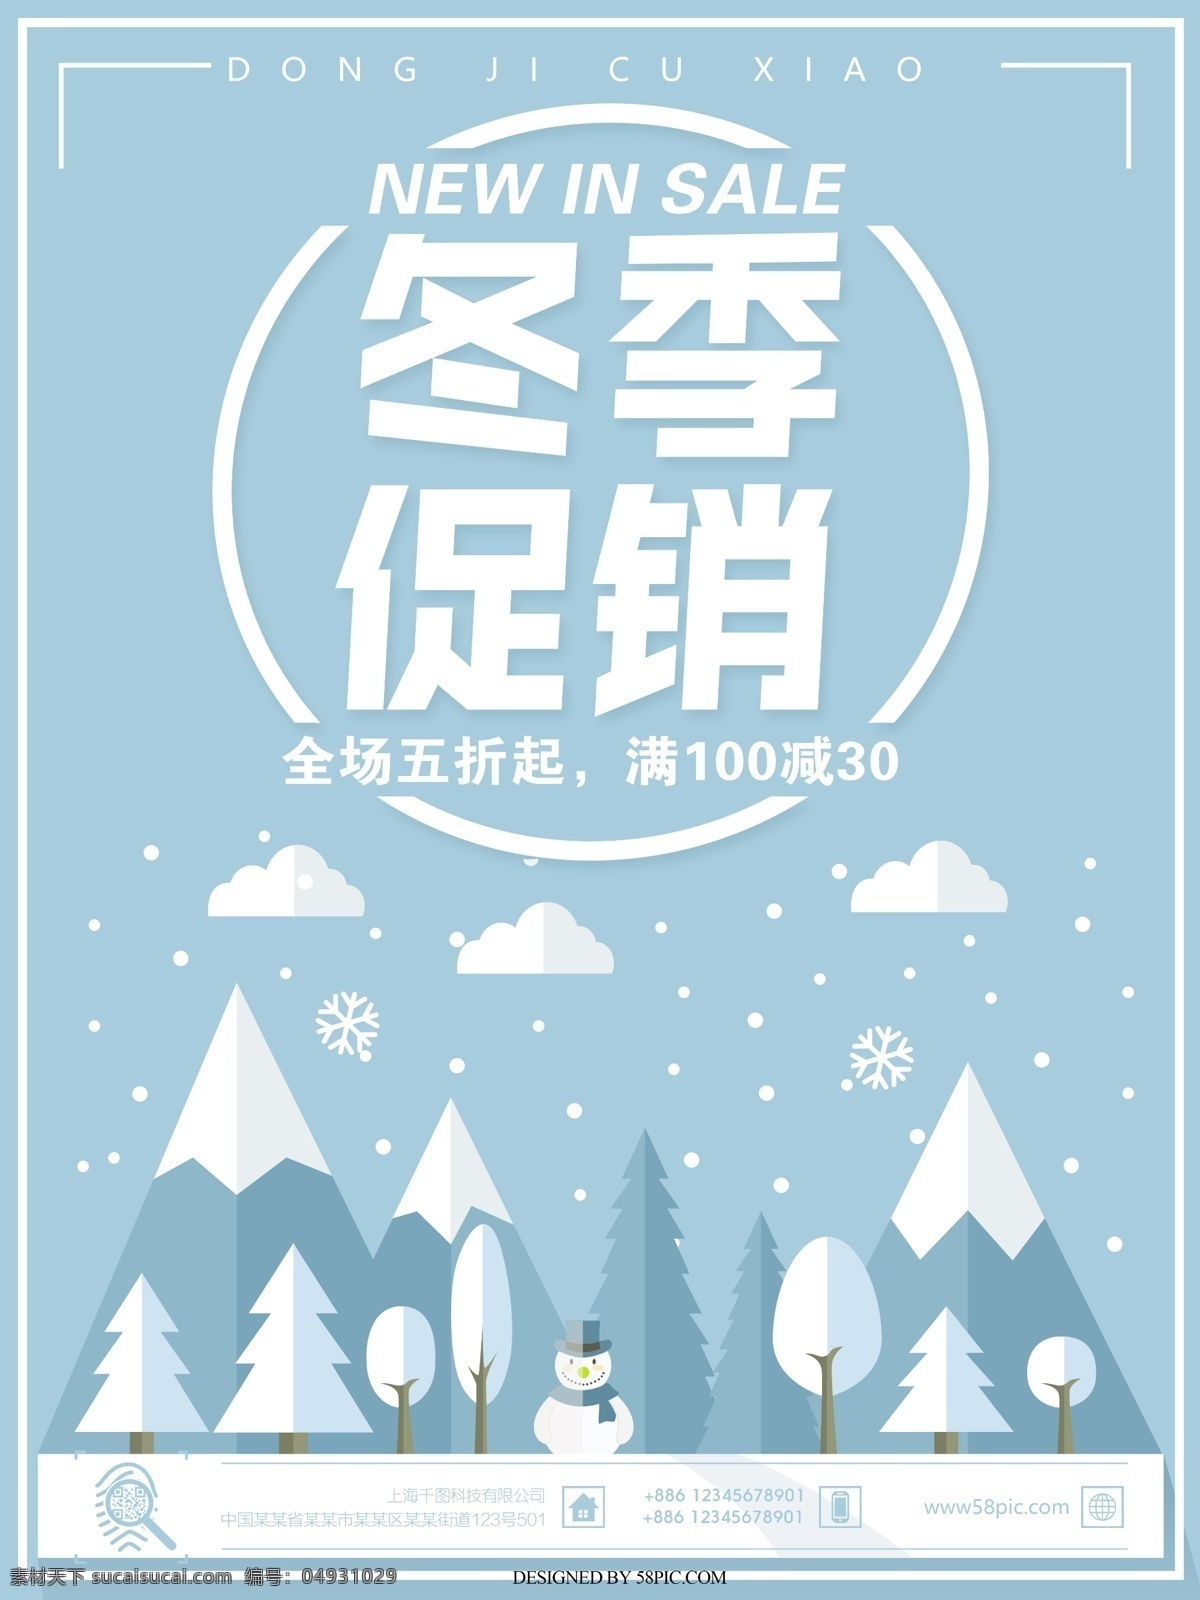 冬季 促销 原创 插画 海报 秋冬促销 冬天 雪 雪人 白色